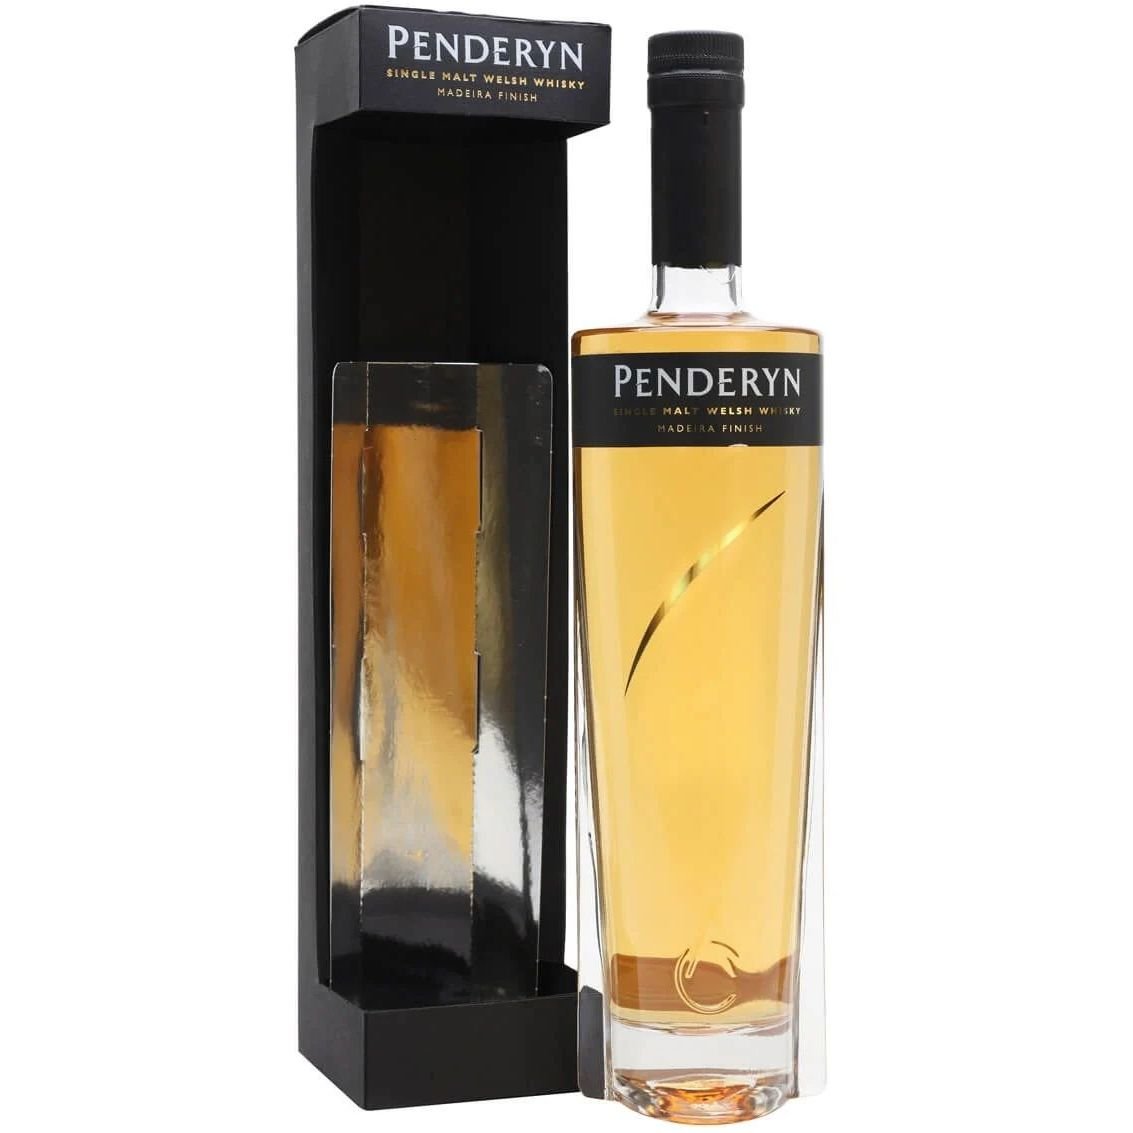 Виски Penderyn Madeira Single Malt Welsh Whisky 46% 0.7 л в подарочной упаковке - фото 1